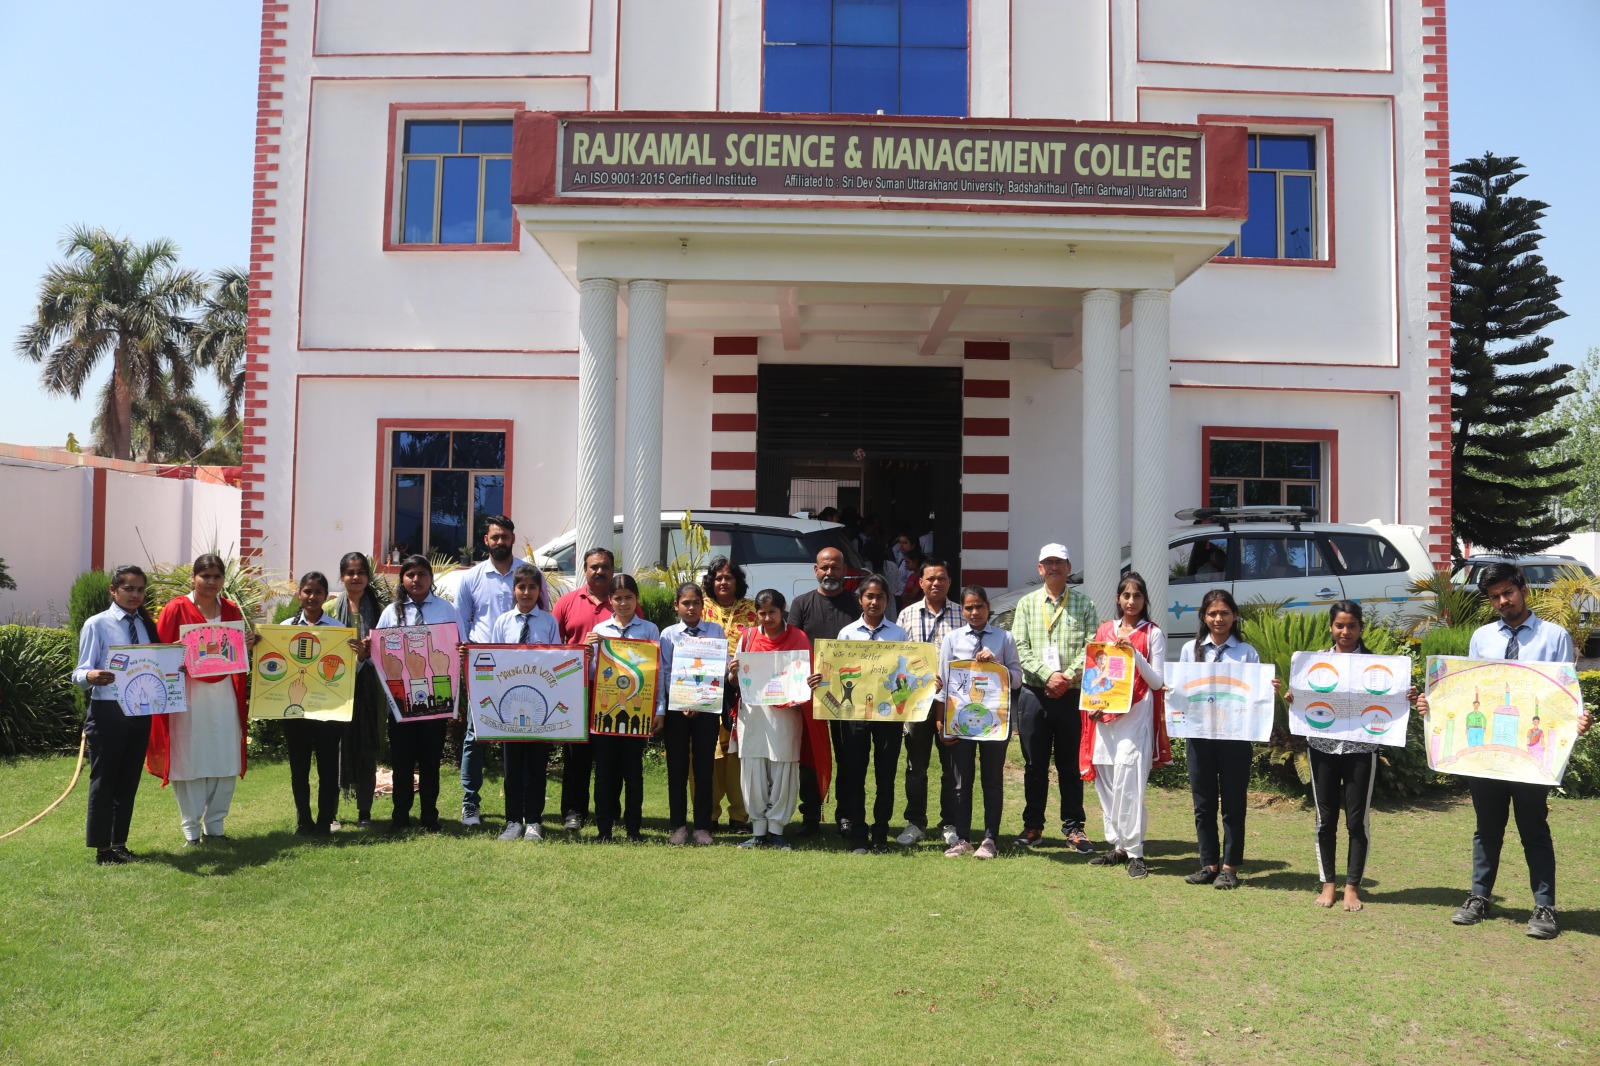 राजकमल कॉलेज के विद्यार्थियों ने रंगोली व पोस्टर बनाकर अनिवार्य मतदान का दिया संदेश